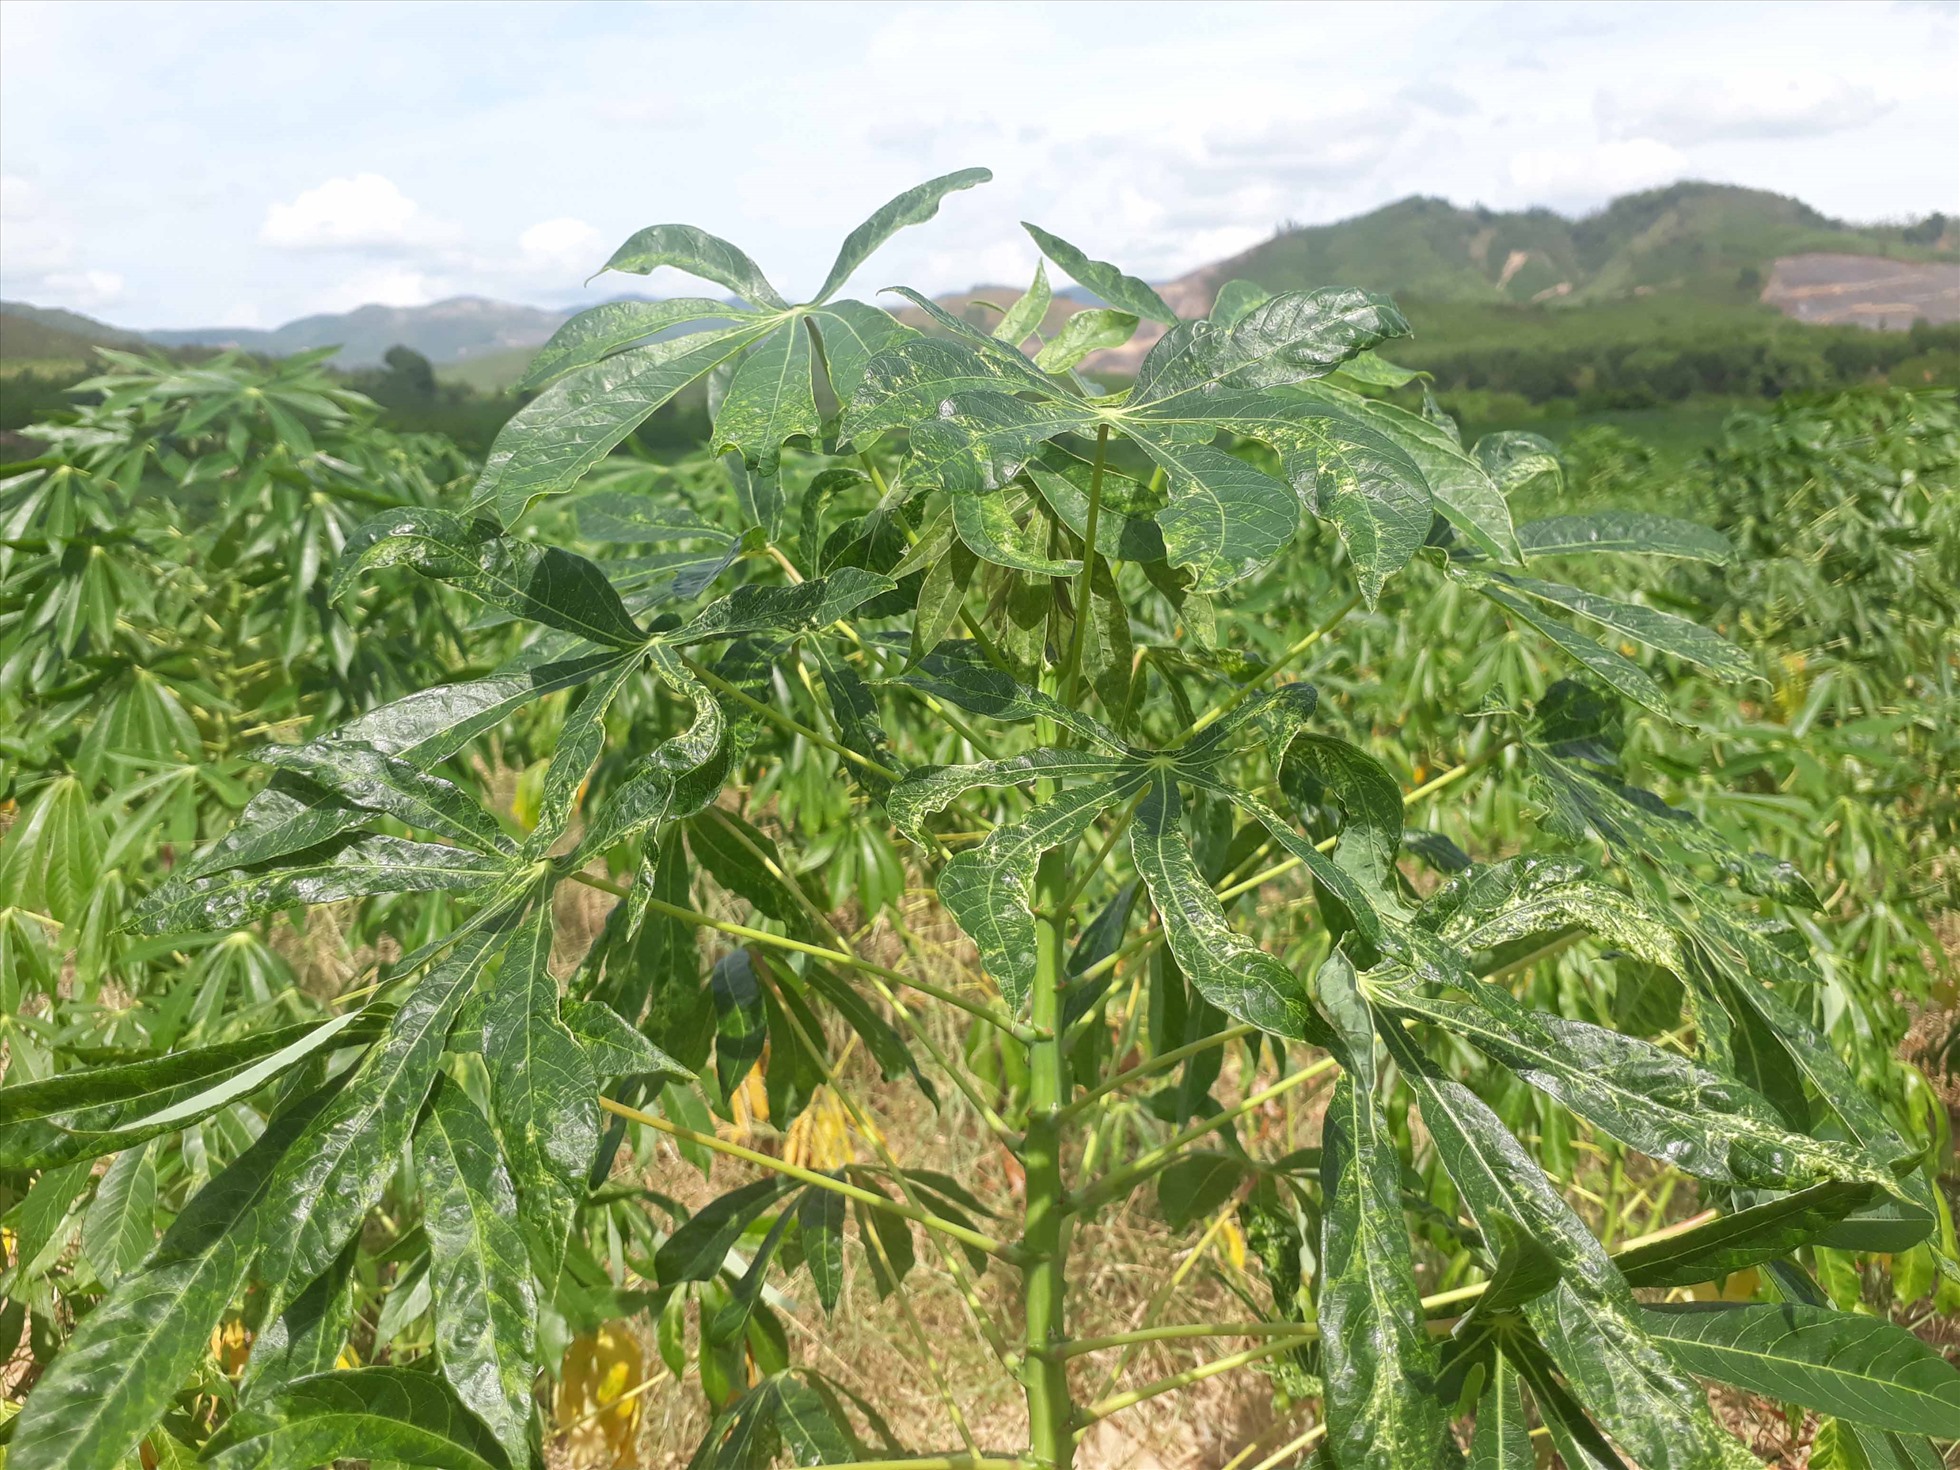 Hơn 14.500ha cây sắn trên địa bàn tỉnh Phú Yên bị mắc bệnh khảm lá virus.